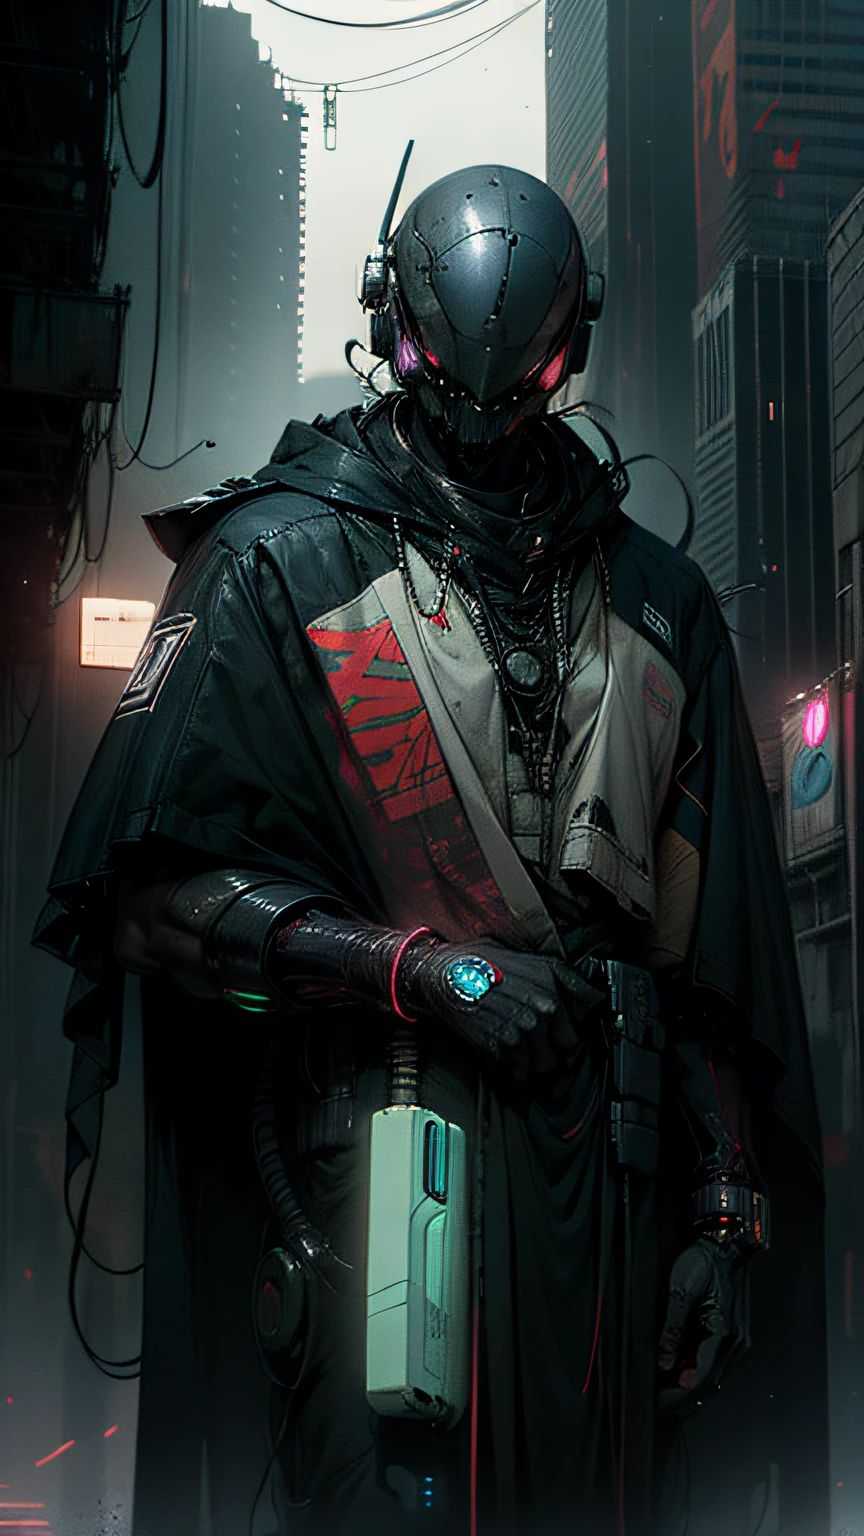 罗伯特·德普德·兰杰 (Robort Derpd Ranger) 为 Scifi Mega Corporation 工作, 巡逻街道的精英企业执法者, 穿着多色长袍斗篷, 公司办事处,赛博朋克场景, 繁忙的街, 霓虹灯, 红色塑料衣